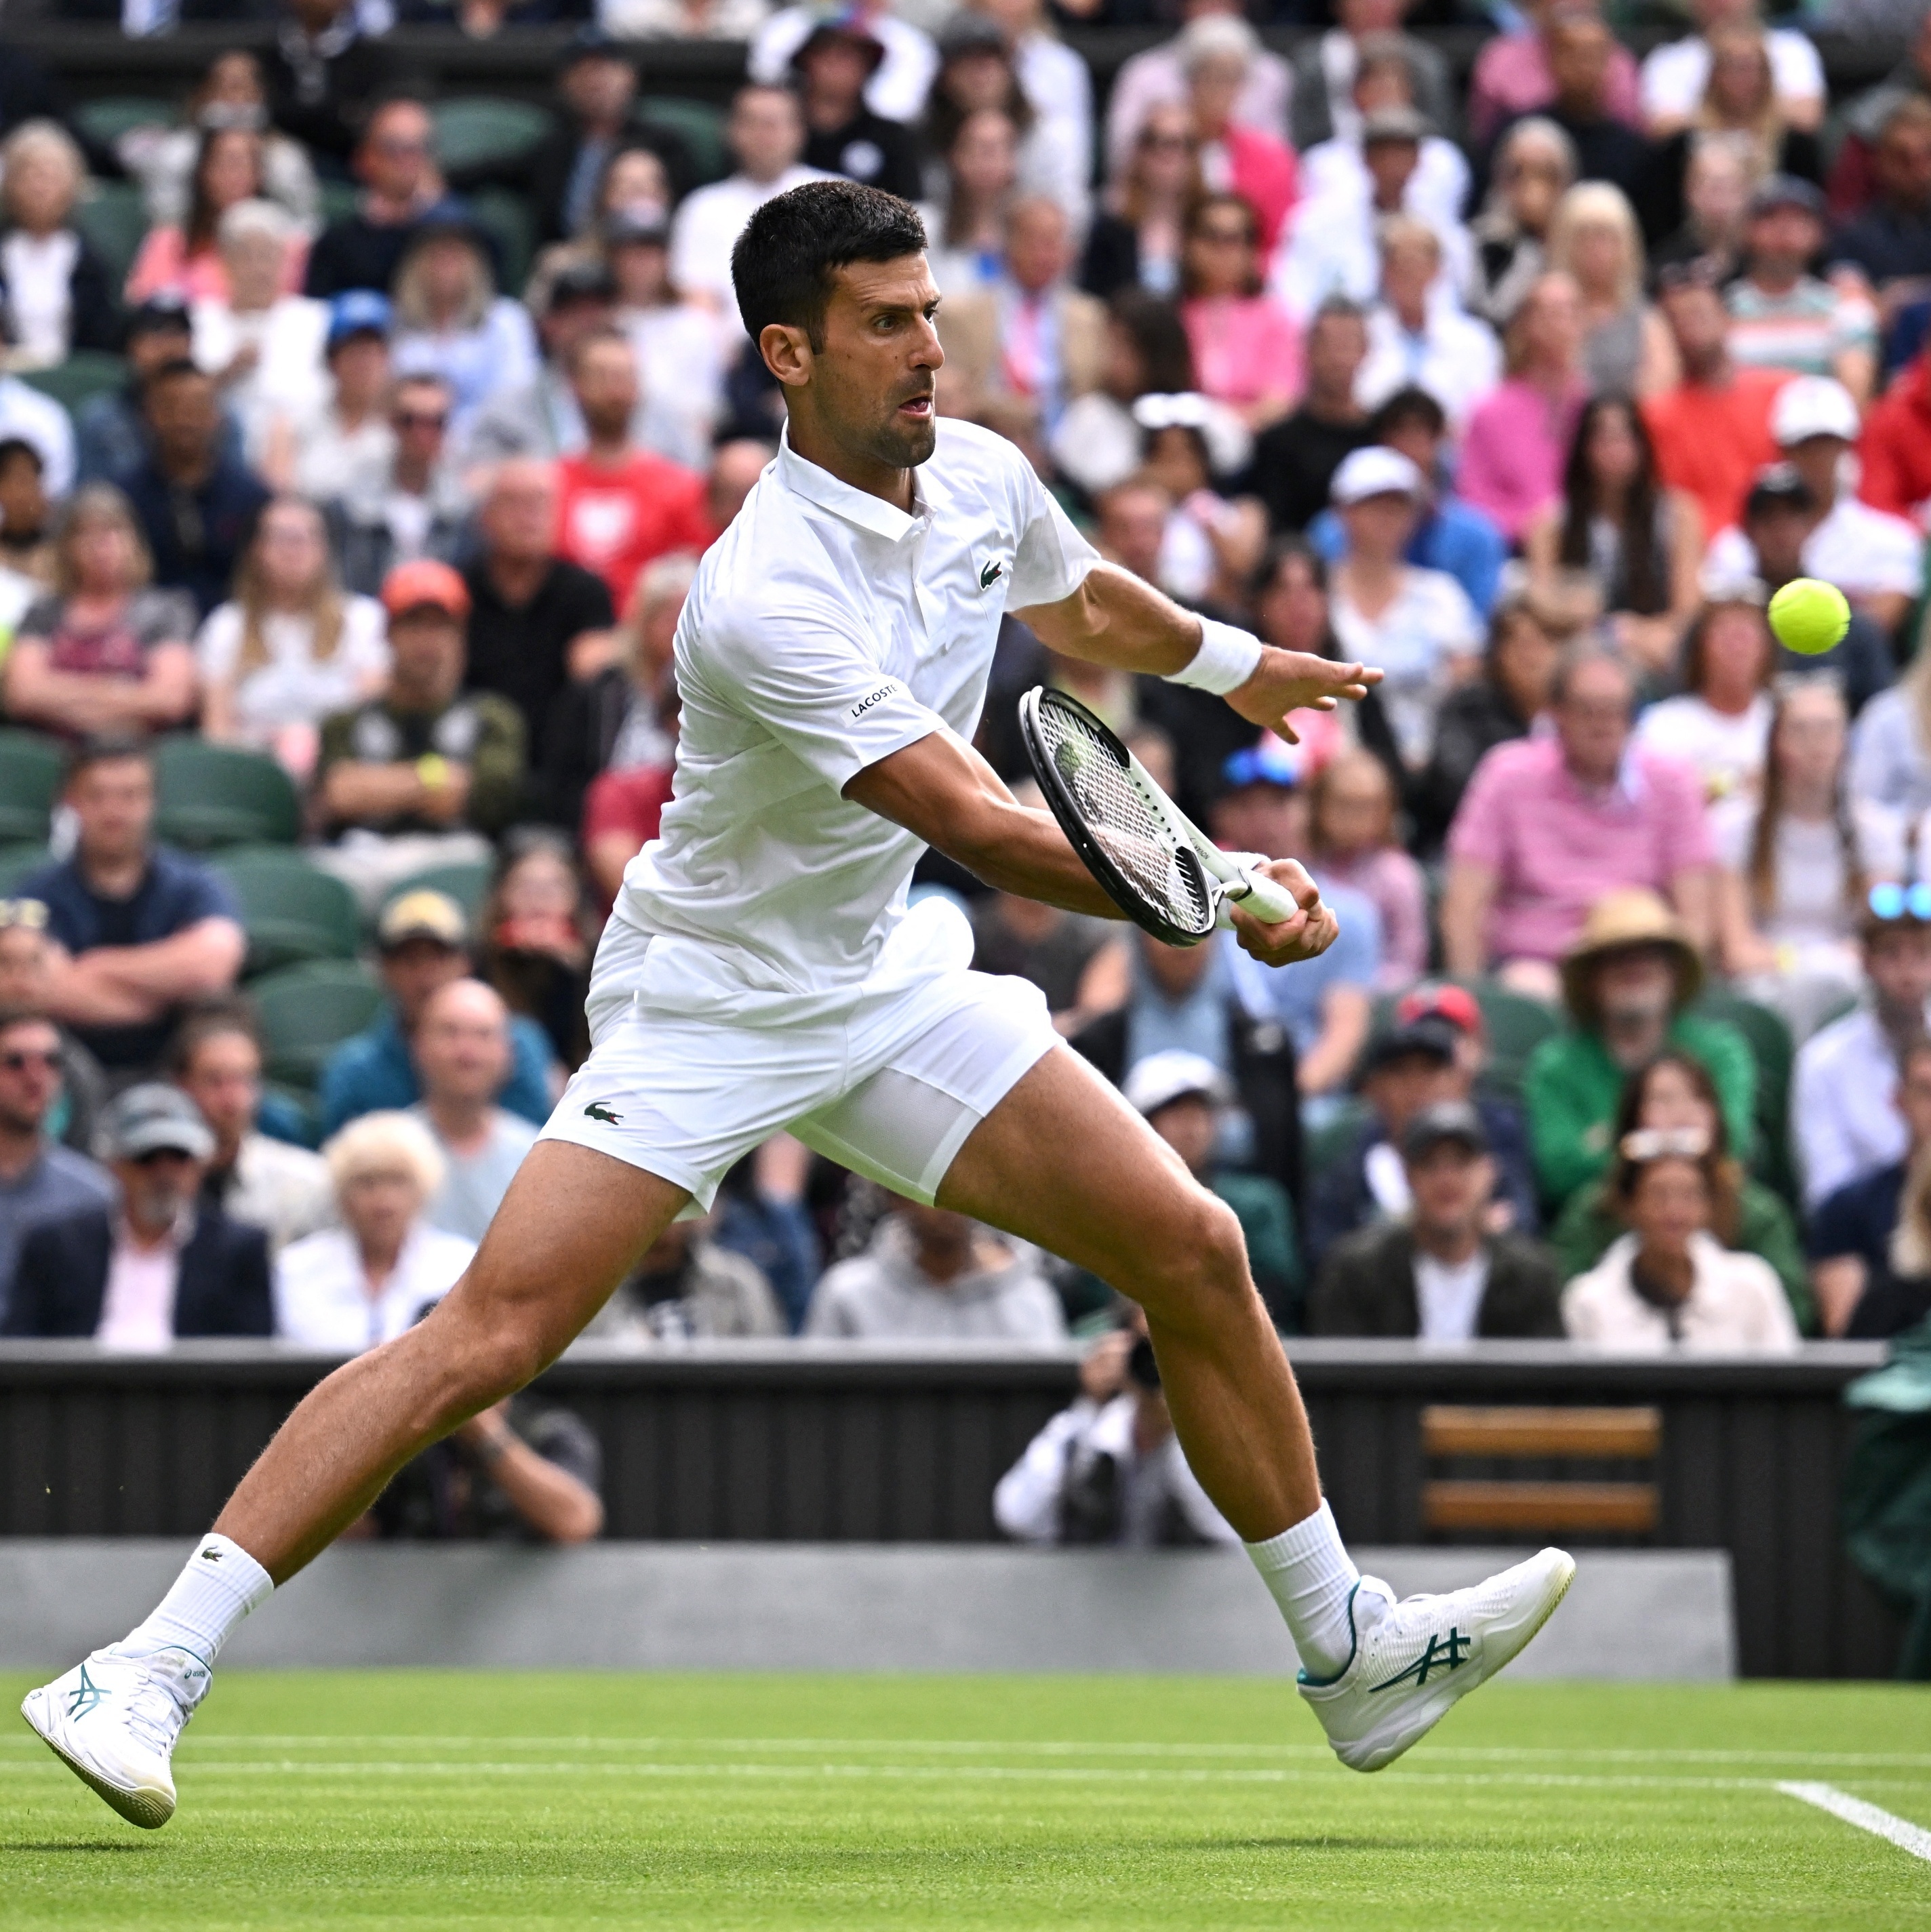 Djokovic voa em segurança e soma 29.ª vitória seguida em Wimbledon